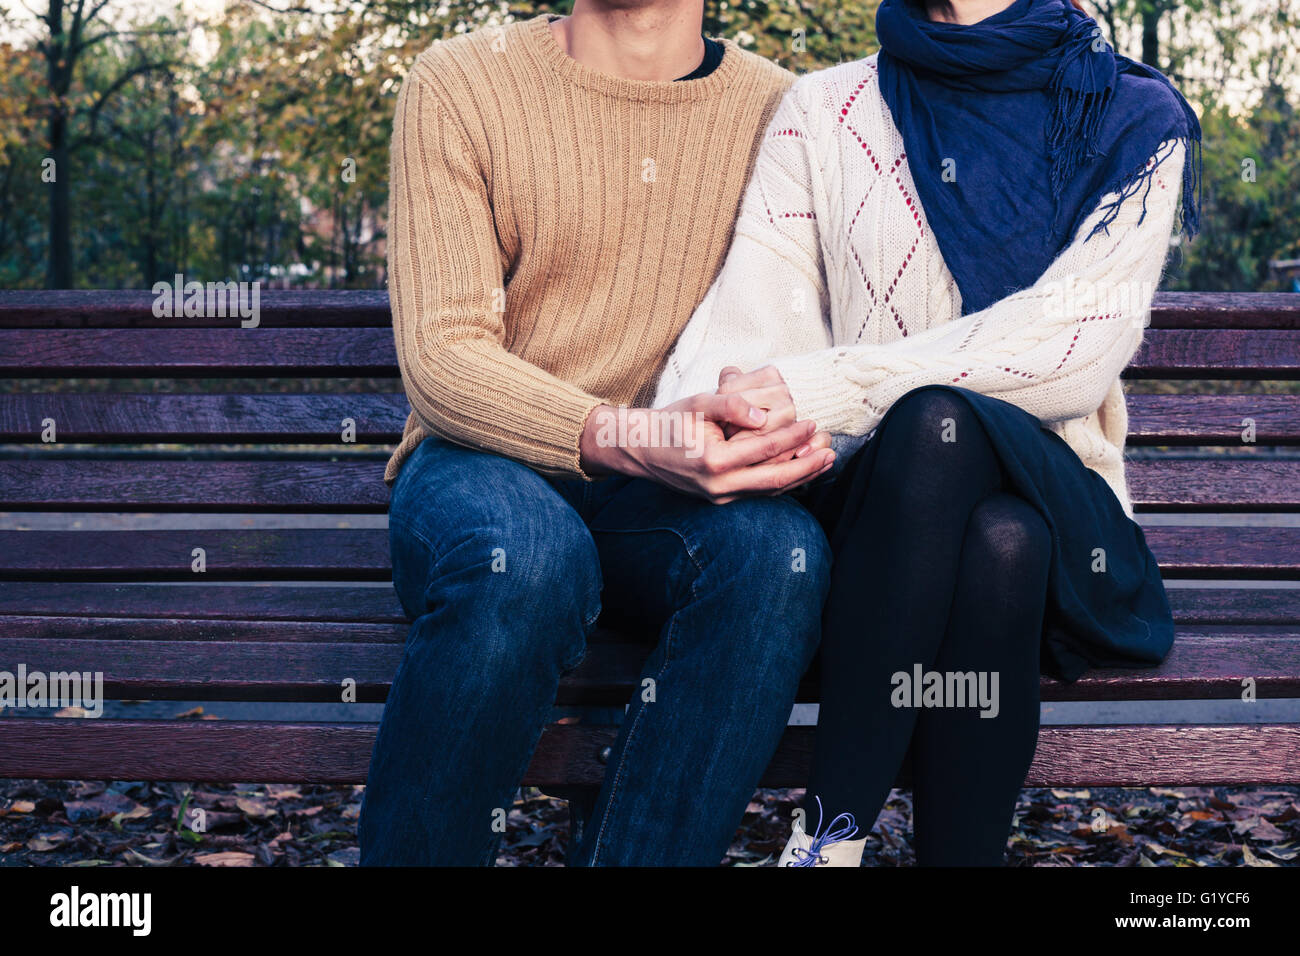 Un youg giovane è seduta e la tenuta di ciascun altro su una panchina nel parco in autunno Foto Stock